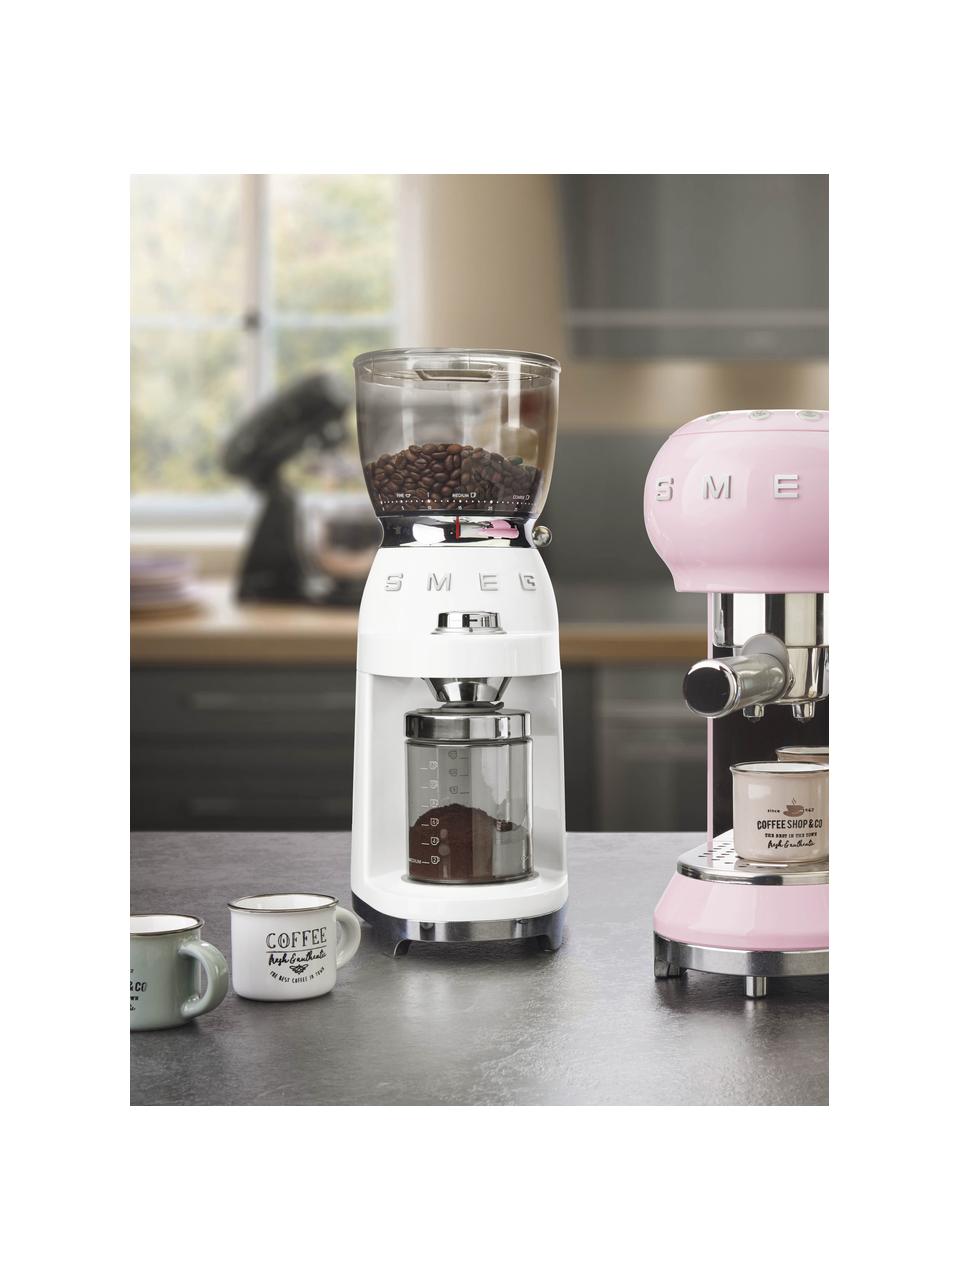 Elektrische Kaffeemühle 50's Style, Gehäuse: Metall, lackiert, Deckel: Tritan™, BPA-frei, Weiß, glänzend, B 17 x H 46 cm